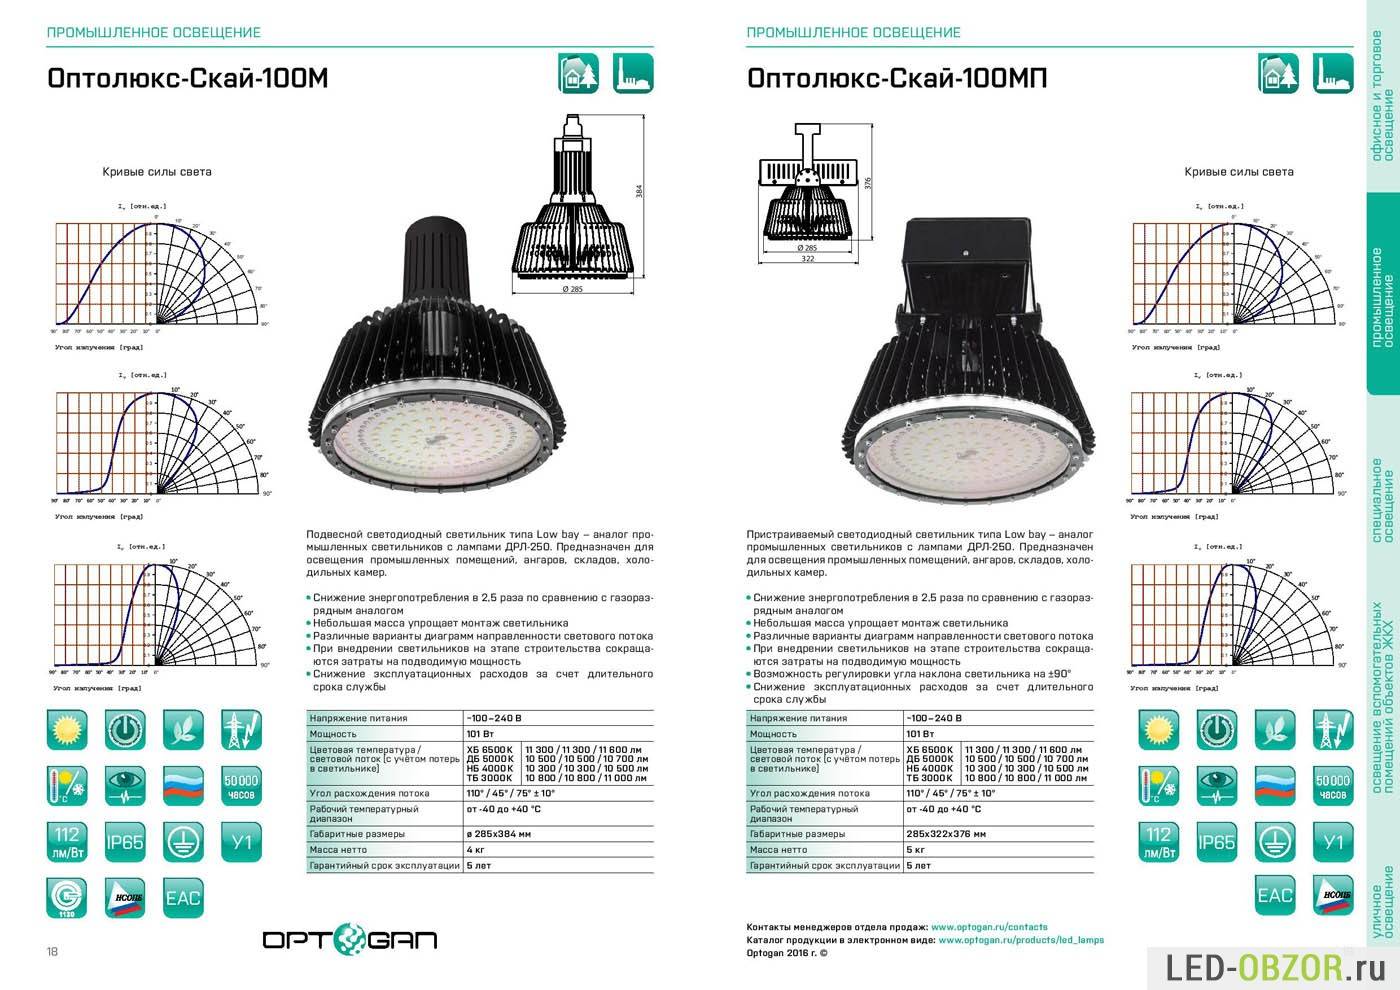 Разновидности потолочных светодиодных светильников линейного типа